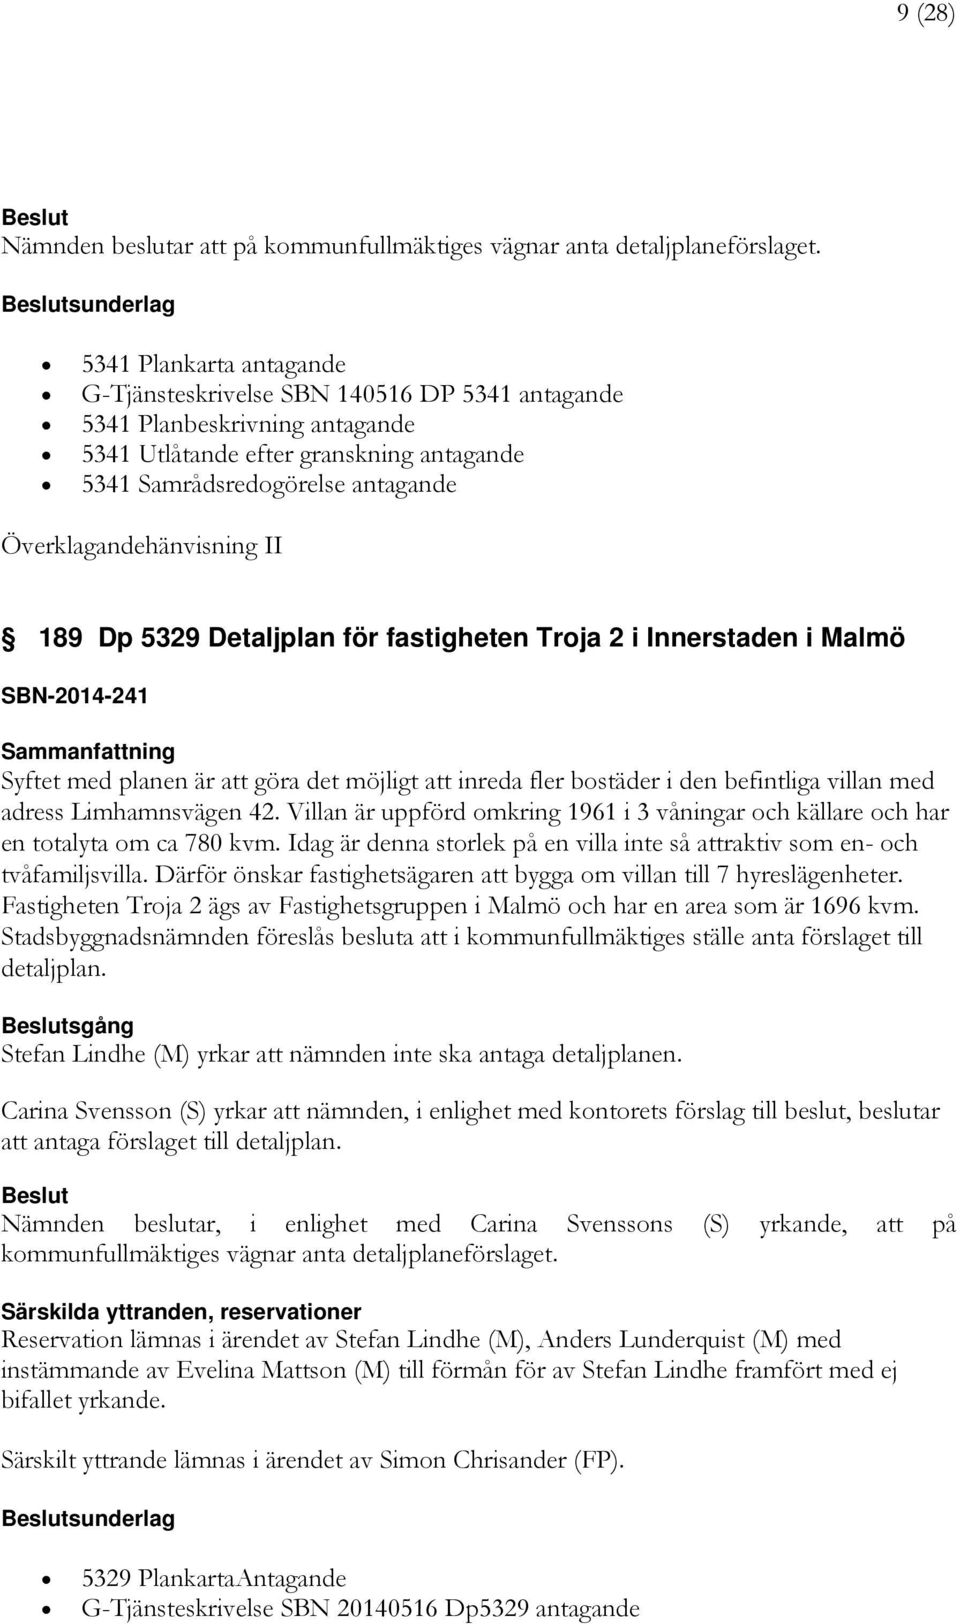 Överklagandehänvisning II 189 Dp 5329 Detaljplan för fastigheten Troja 2 i Innerstaden i Malmö SBN-2014-241 Syftet med planen är att göra det möjligt att inreda fler bostäder i den befintliga villan